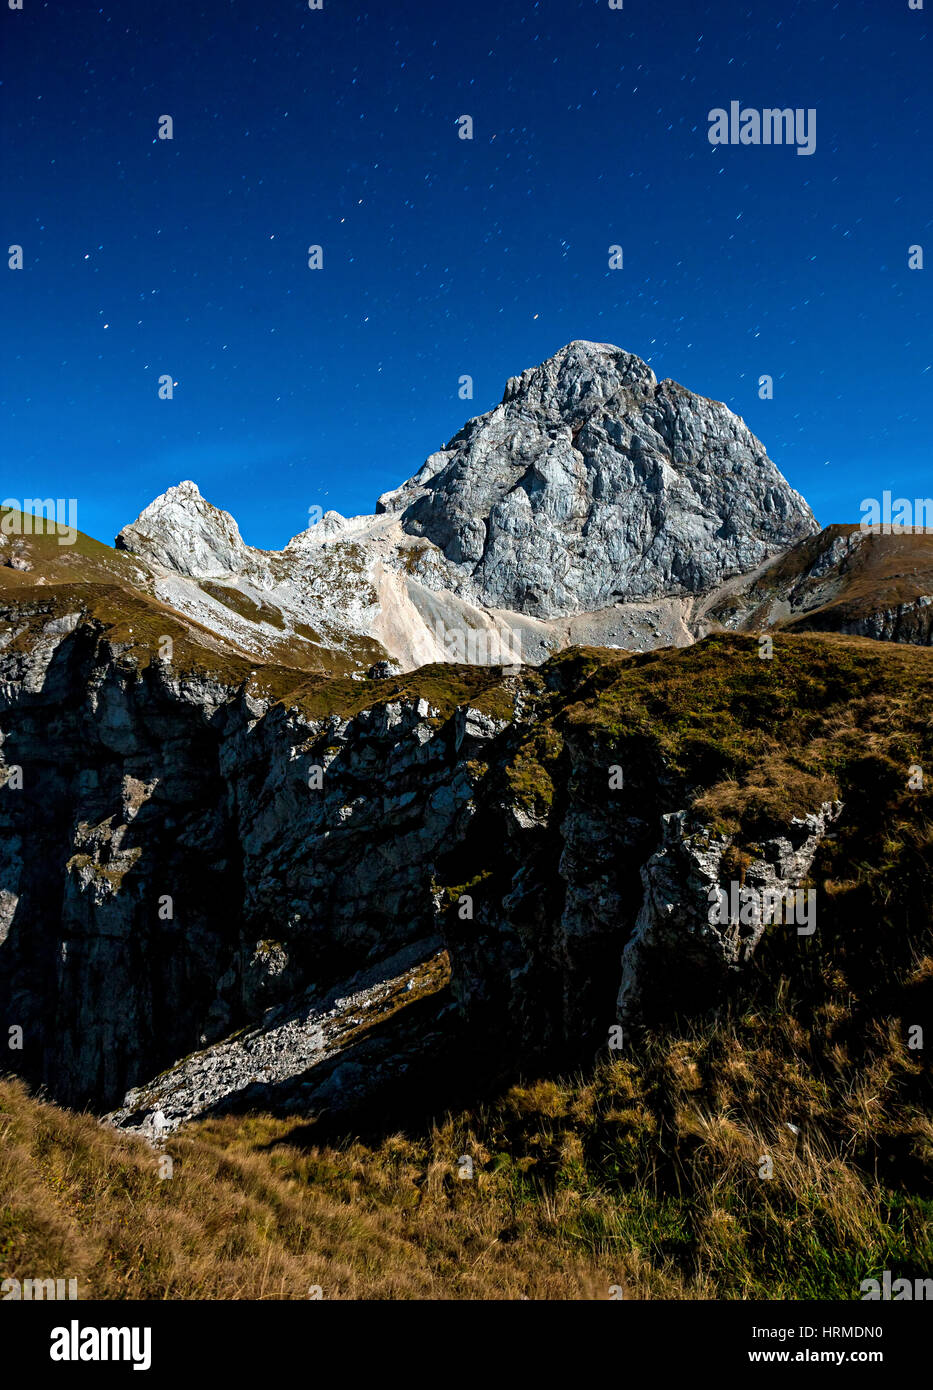 Mountain peak Mangart in the night with starry night, Slovenia Julian alps. Stock Photo